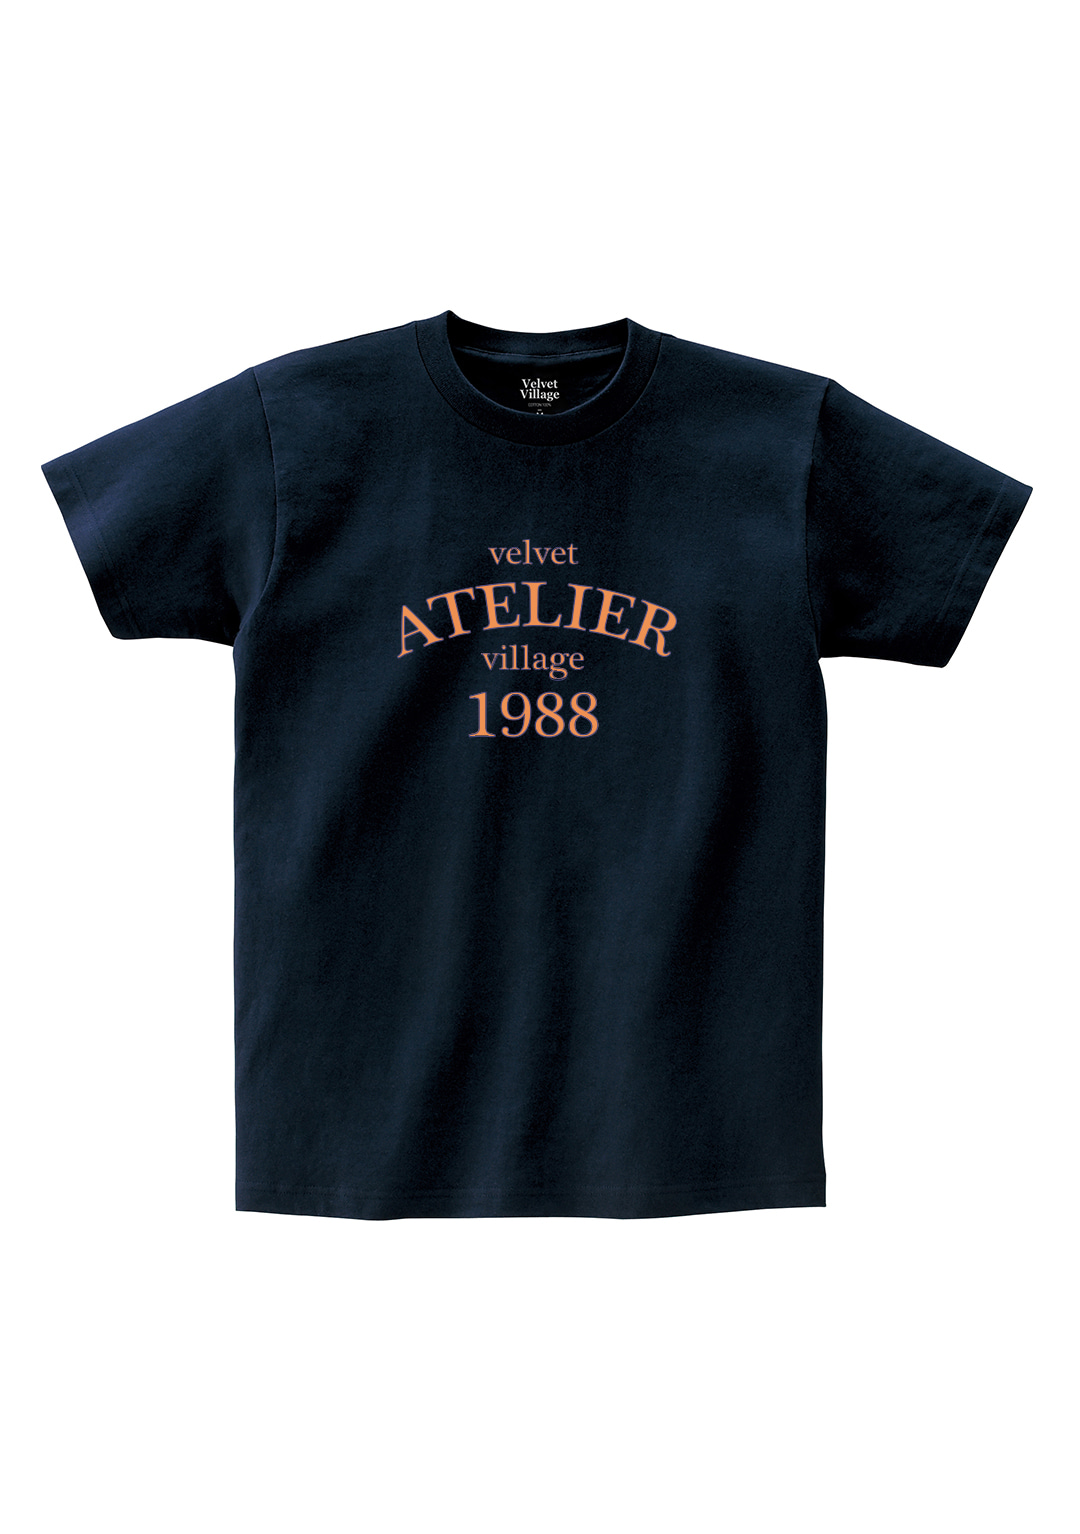 Aterier T-shirt (Navy)